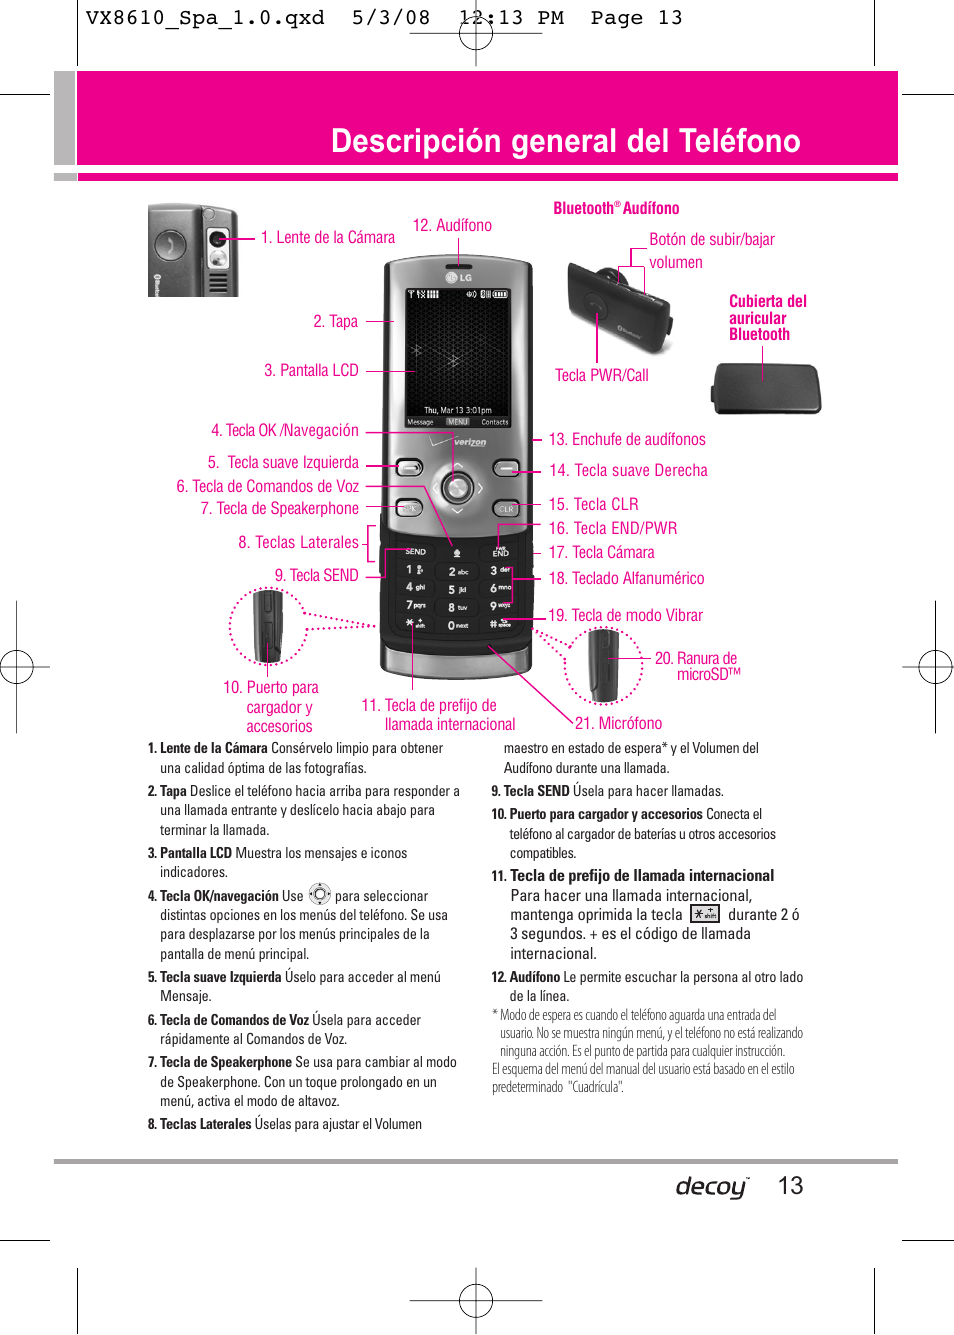 Descripción general del teléfono | LG LGVX8610LK Manual del usuario | Página 13 / 149